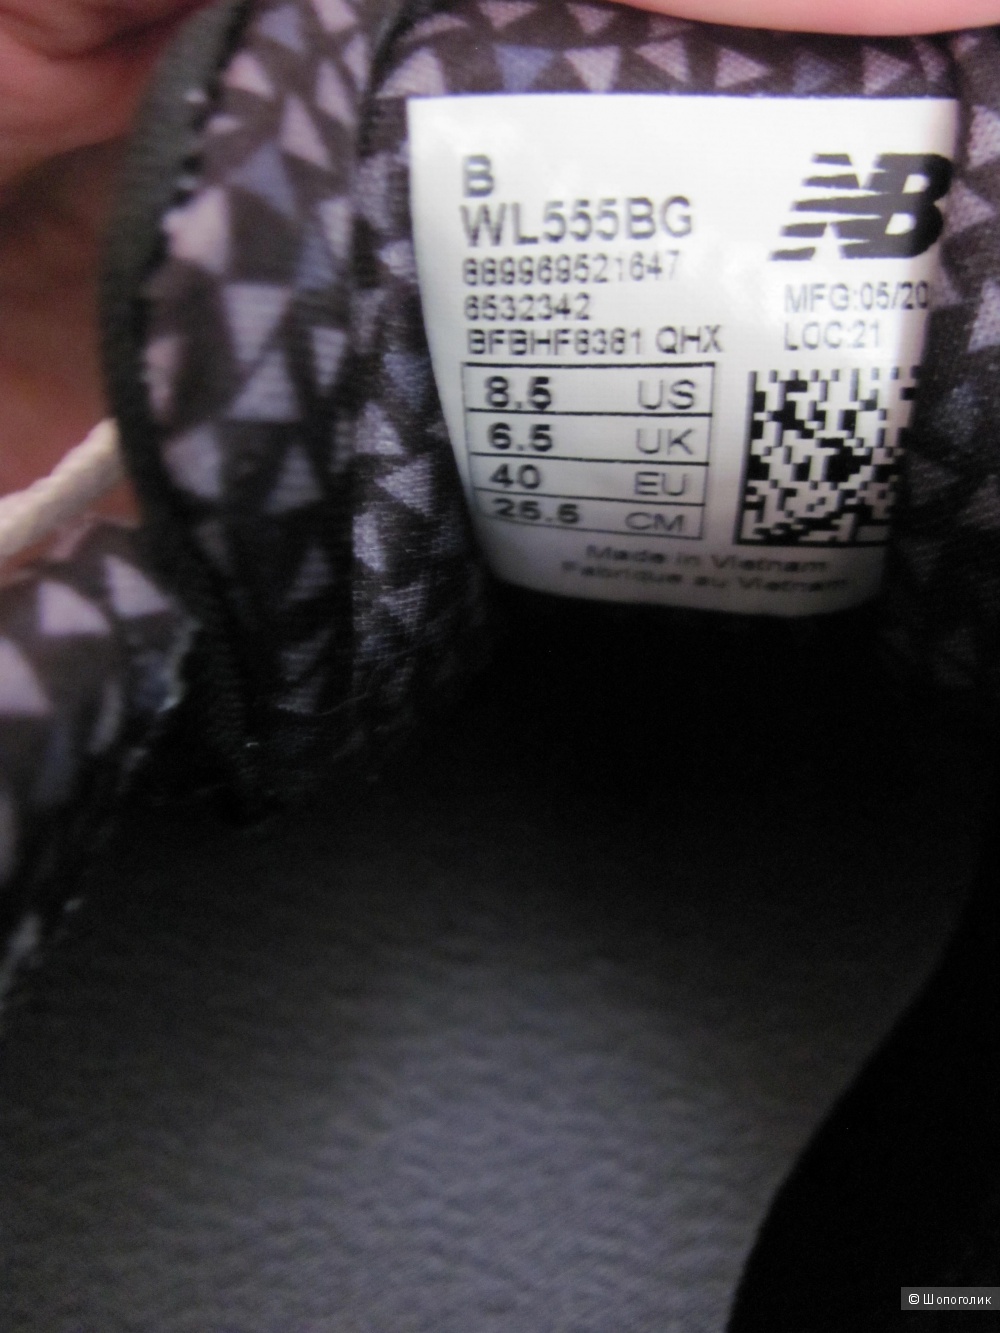 Кроссовки New Balance 555, черные, размер 6,5UK/8,5US/40EU/25,5см